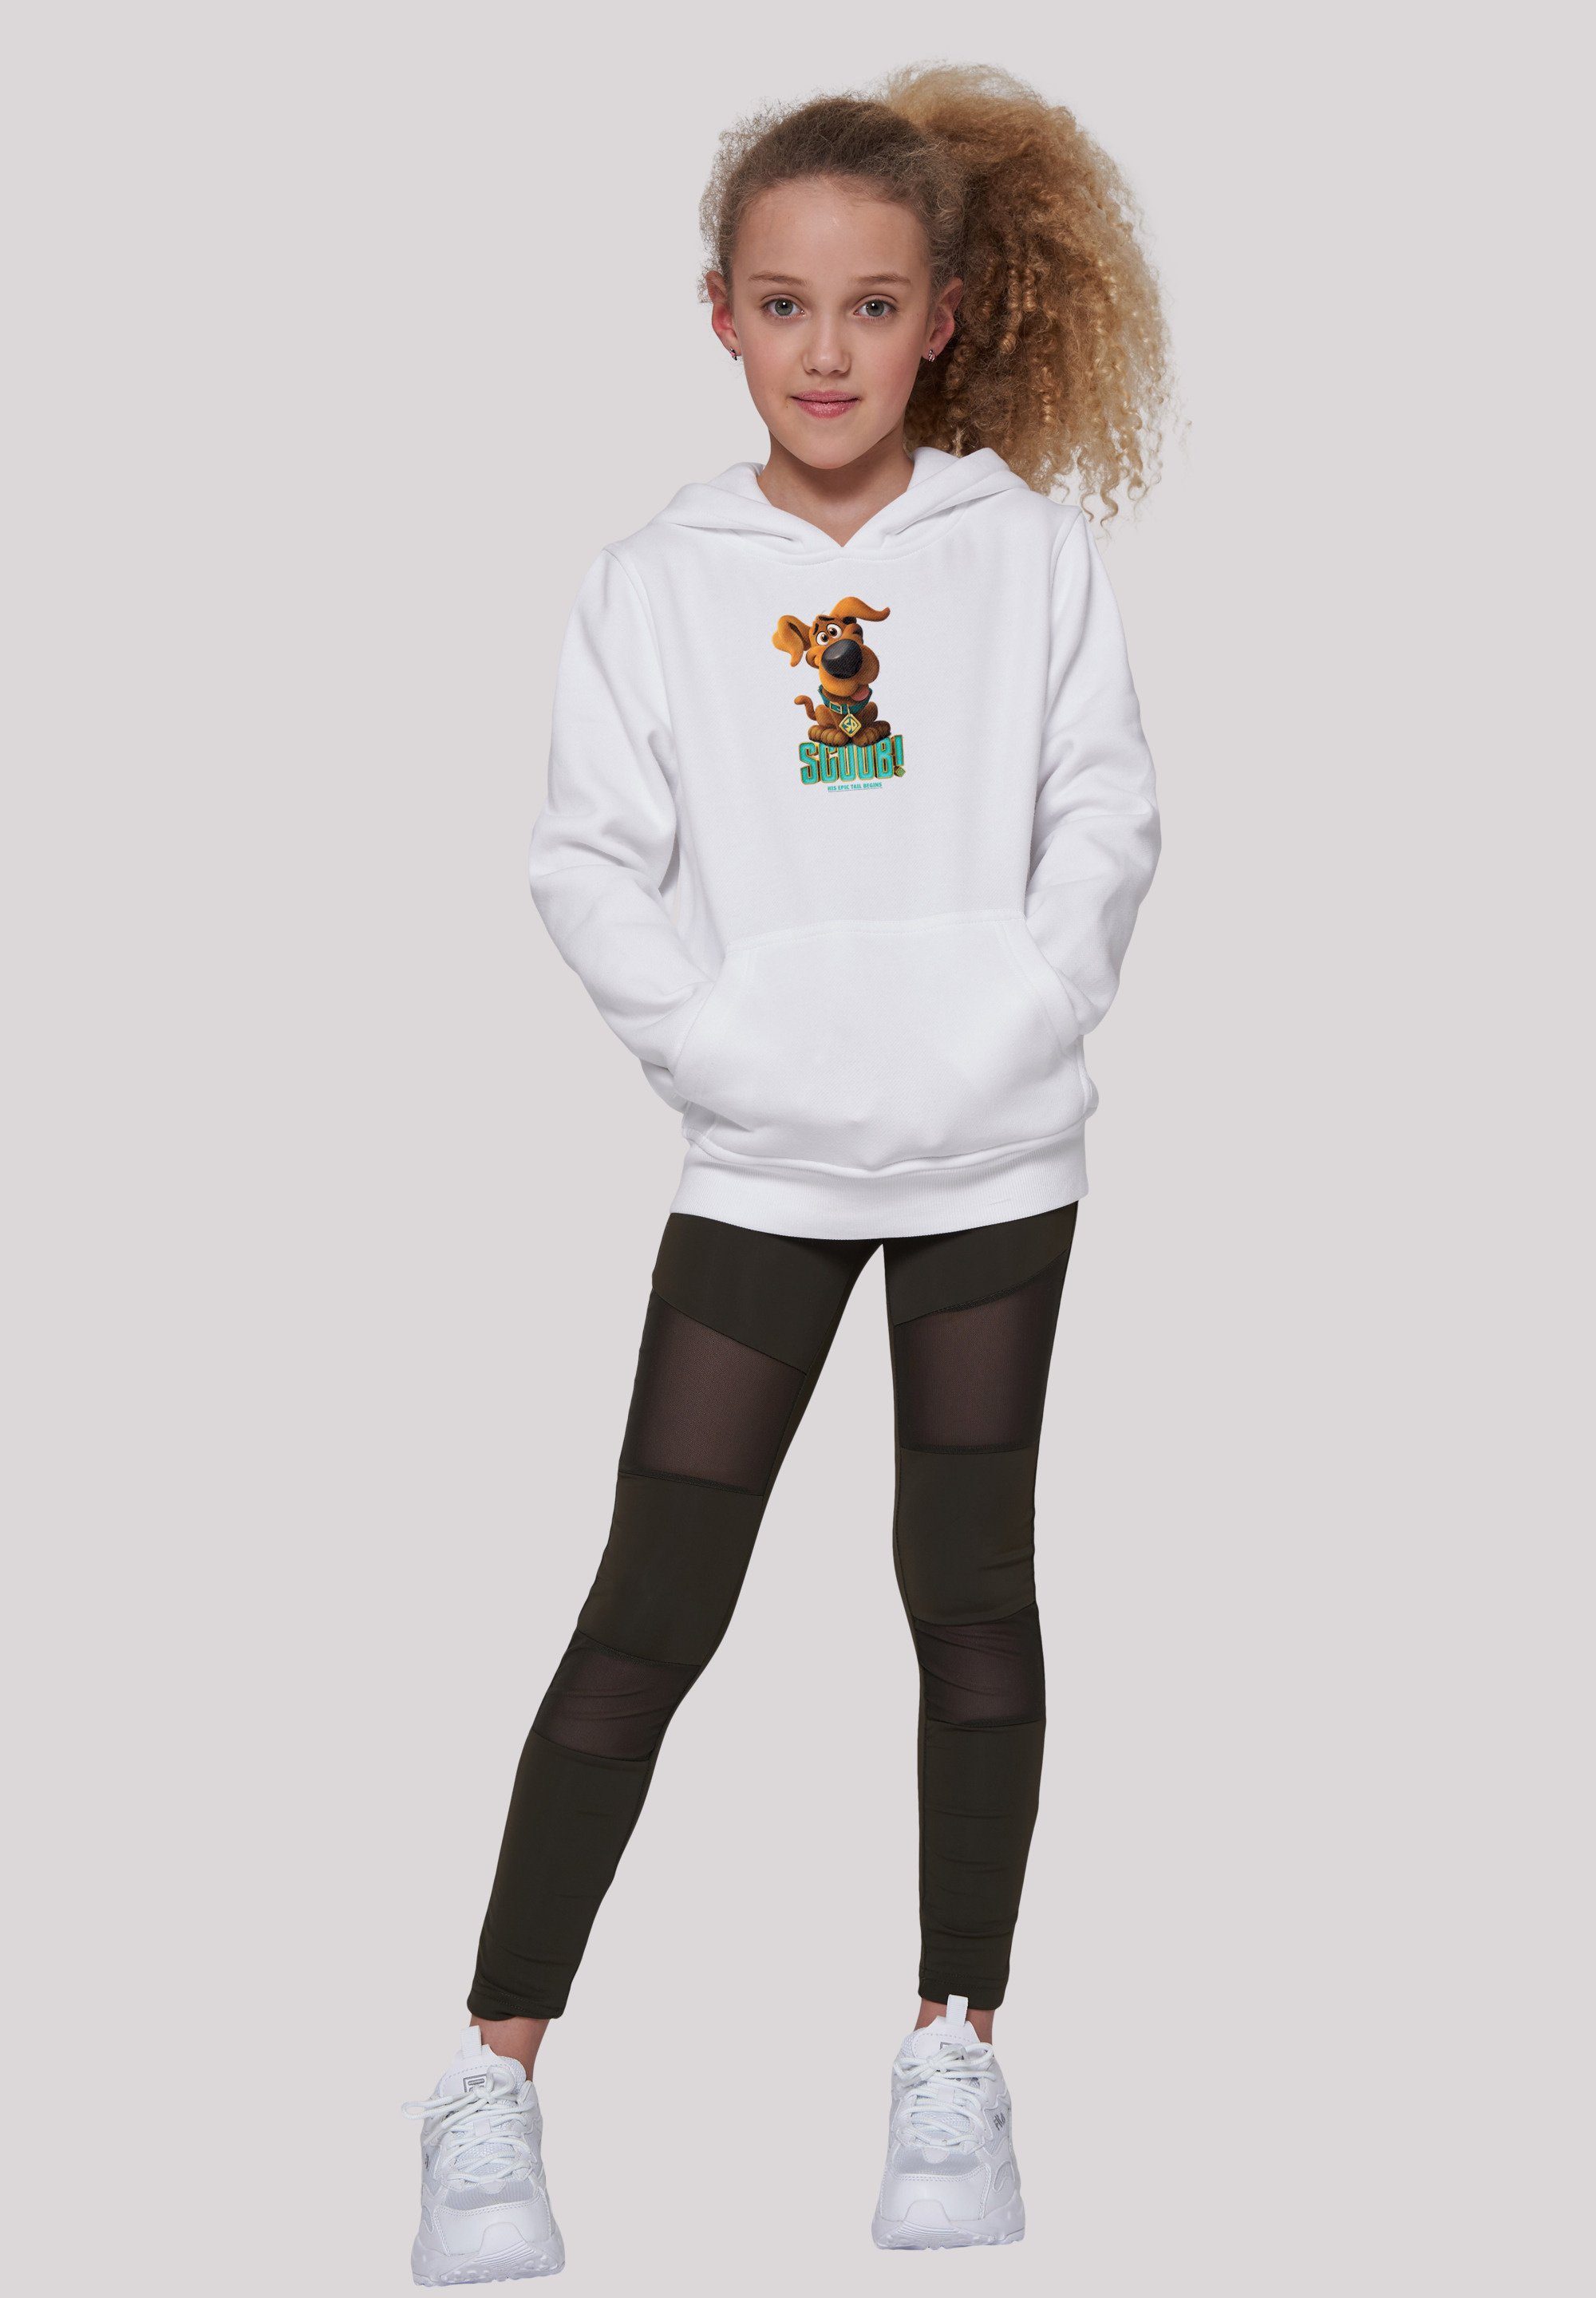 Merch,Jungen,Mädchen,Bedruckt F4NT4STIC Scooby Scooby Unisex Puppy Doo weiß Sweatshirt Kinder,Premium